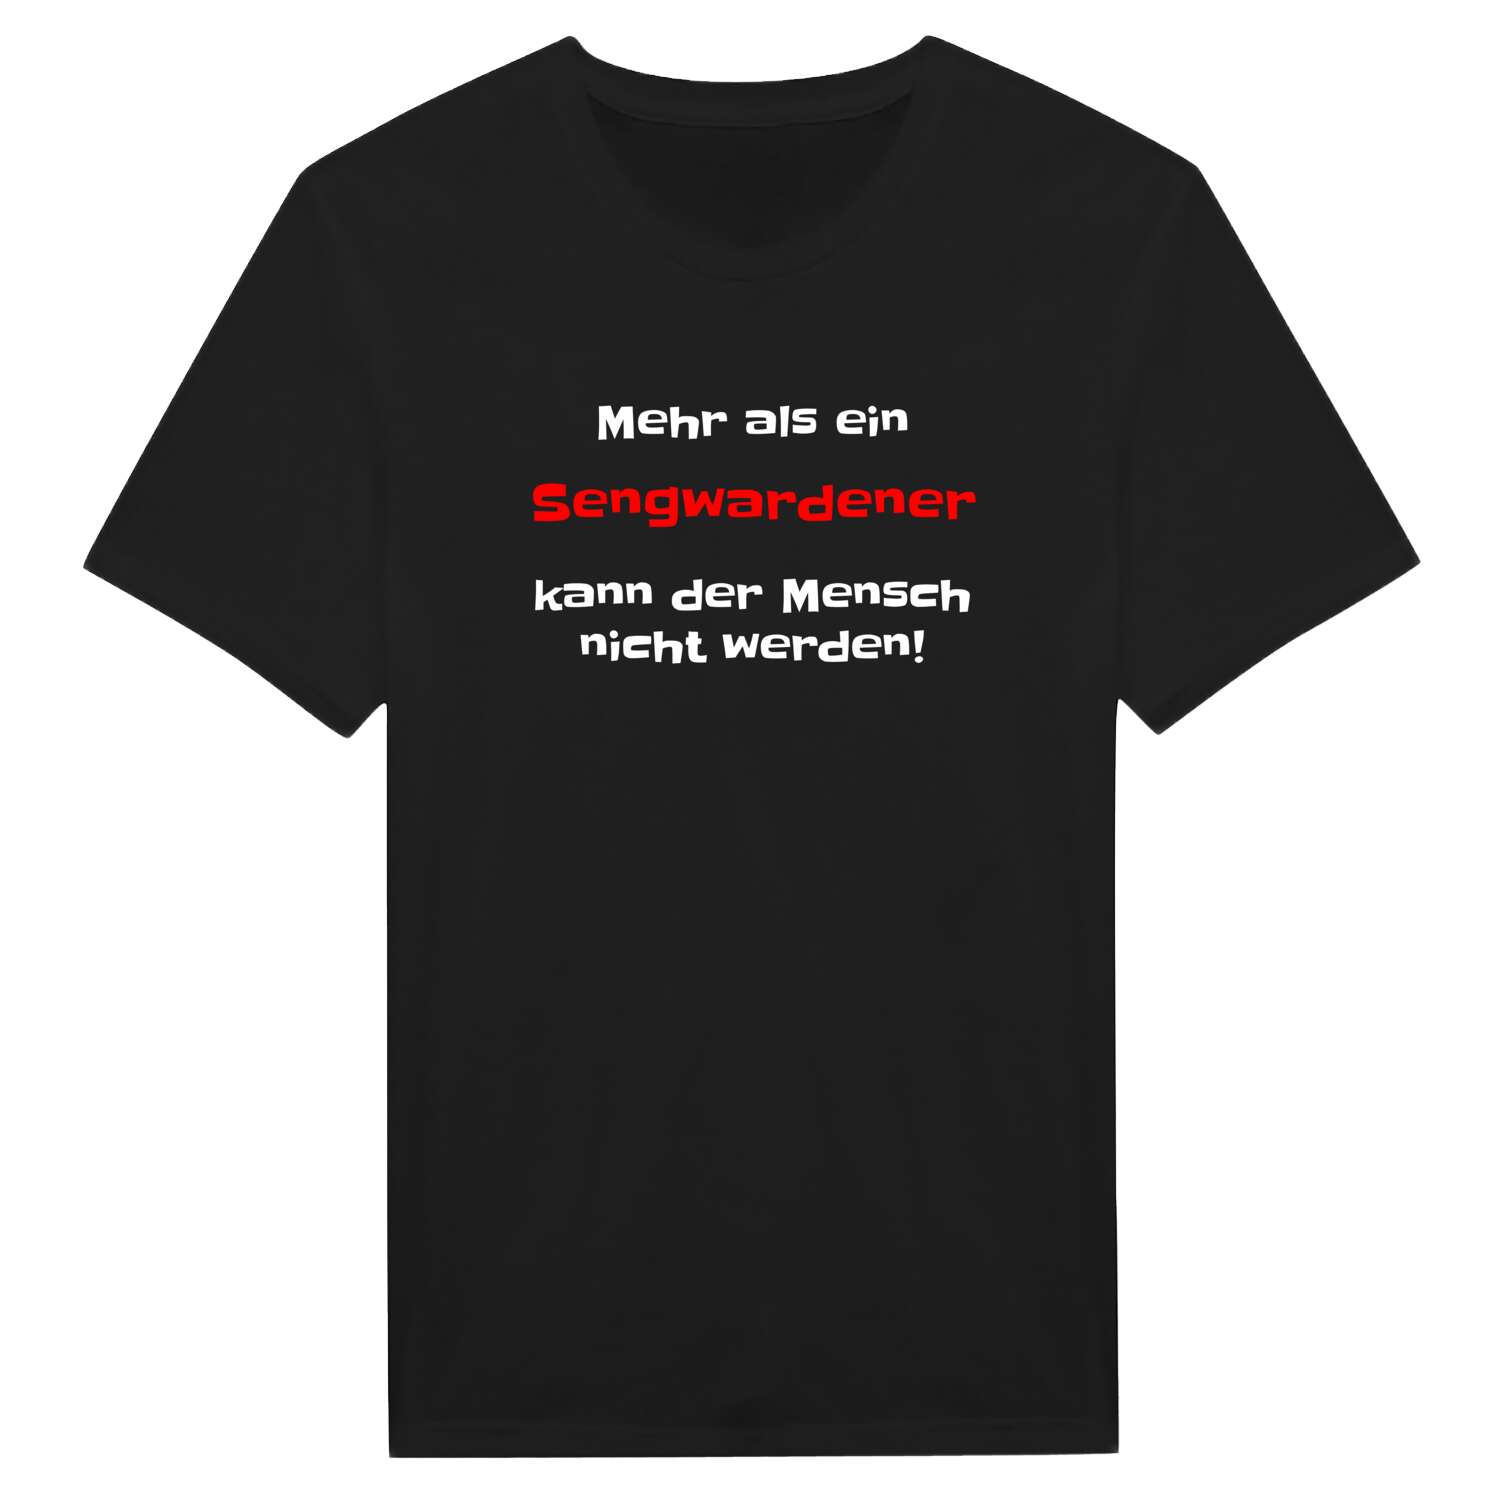 Sengwarden T-Shirt »Mehr als ein«